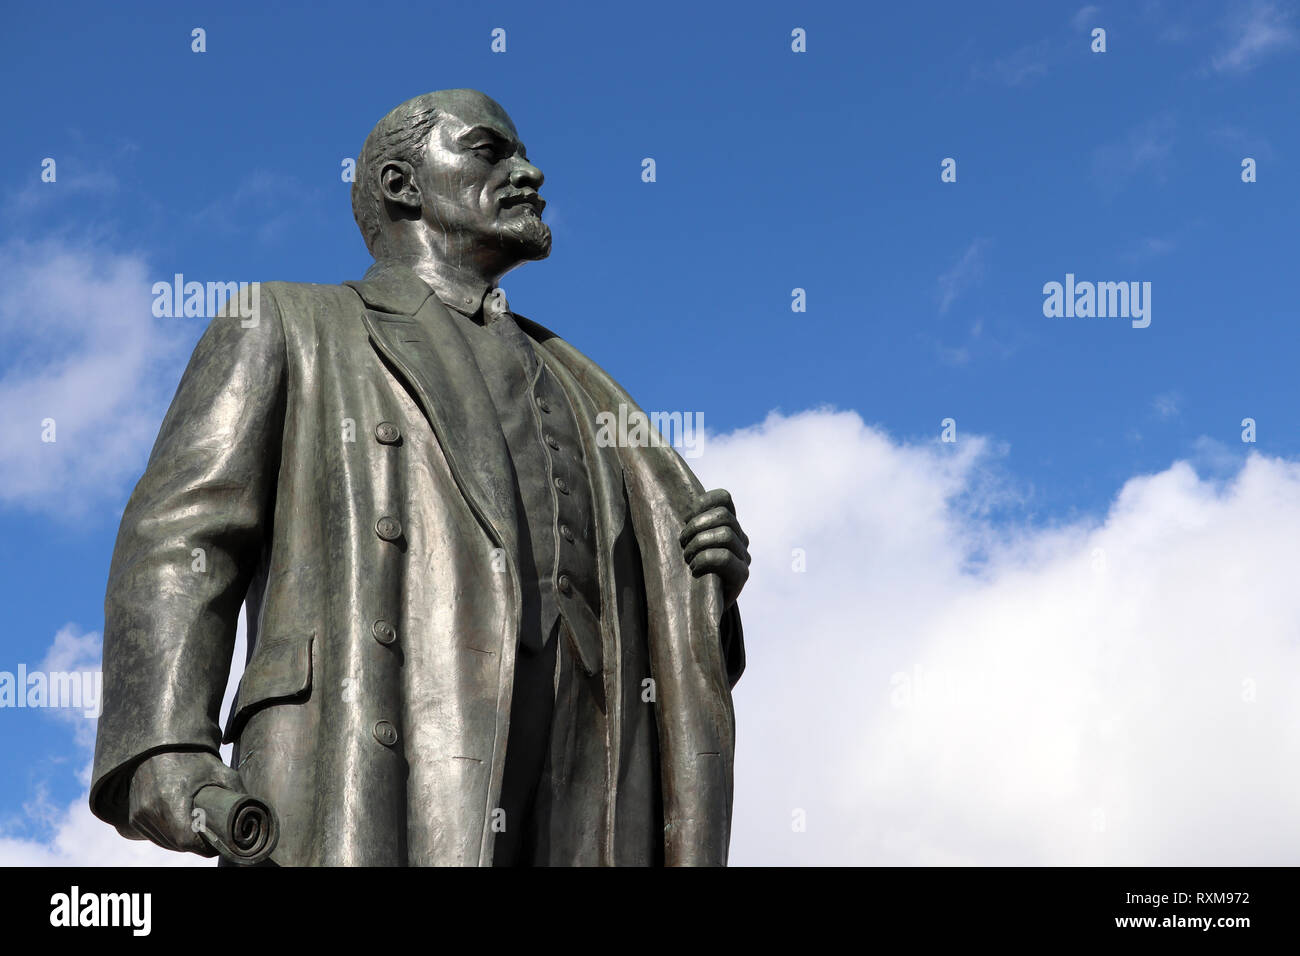 Monument de Lénine, le chef du prolétariat russe contre le ciel bleu avec des nuages blancs Banque D'Images